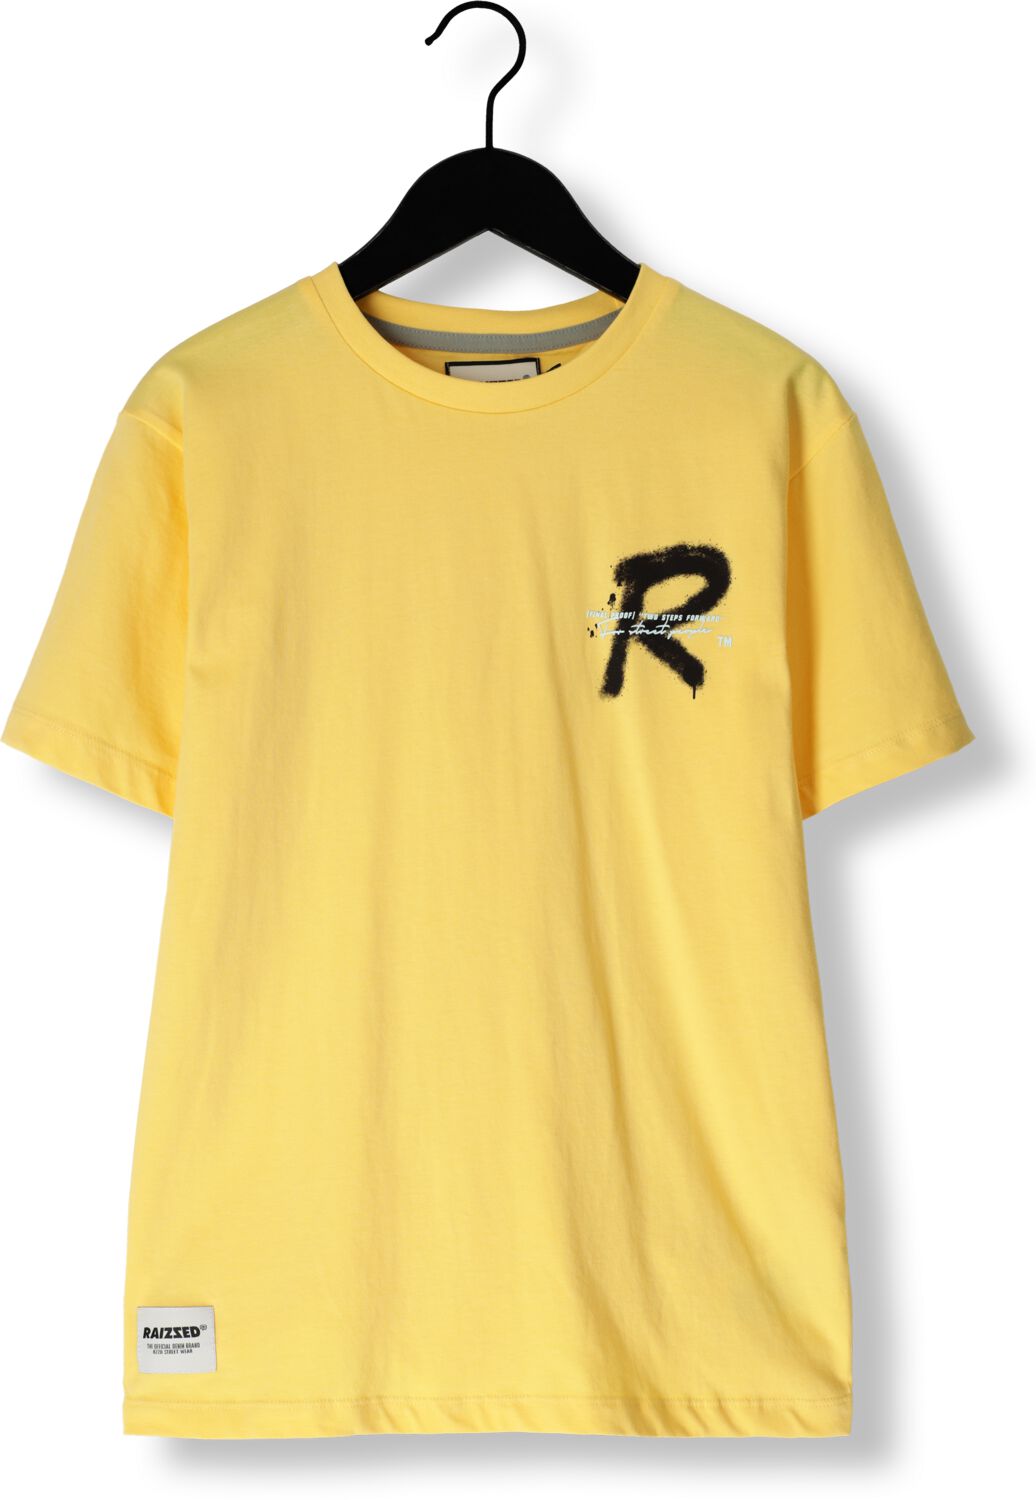 Raizzed T-shirt Halston met printopdruk geel Jongens Katoen Ronde hals 128